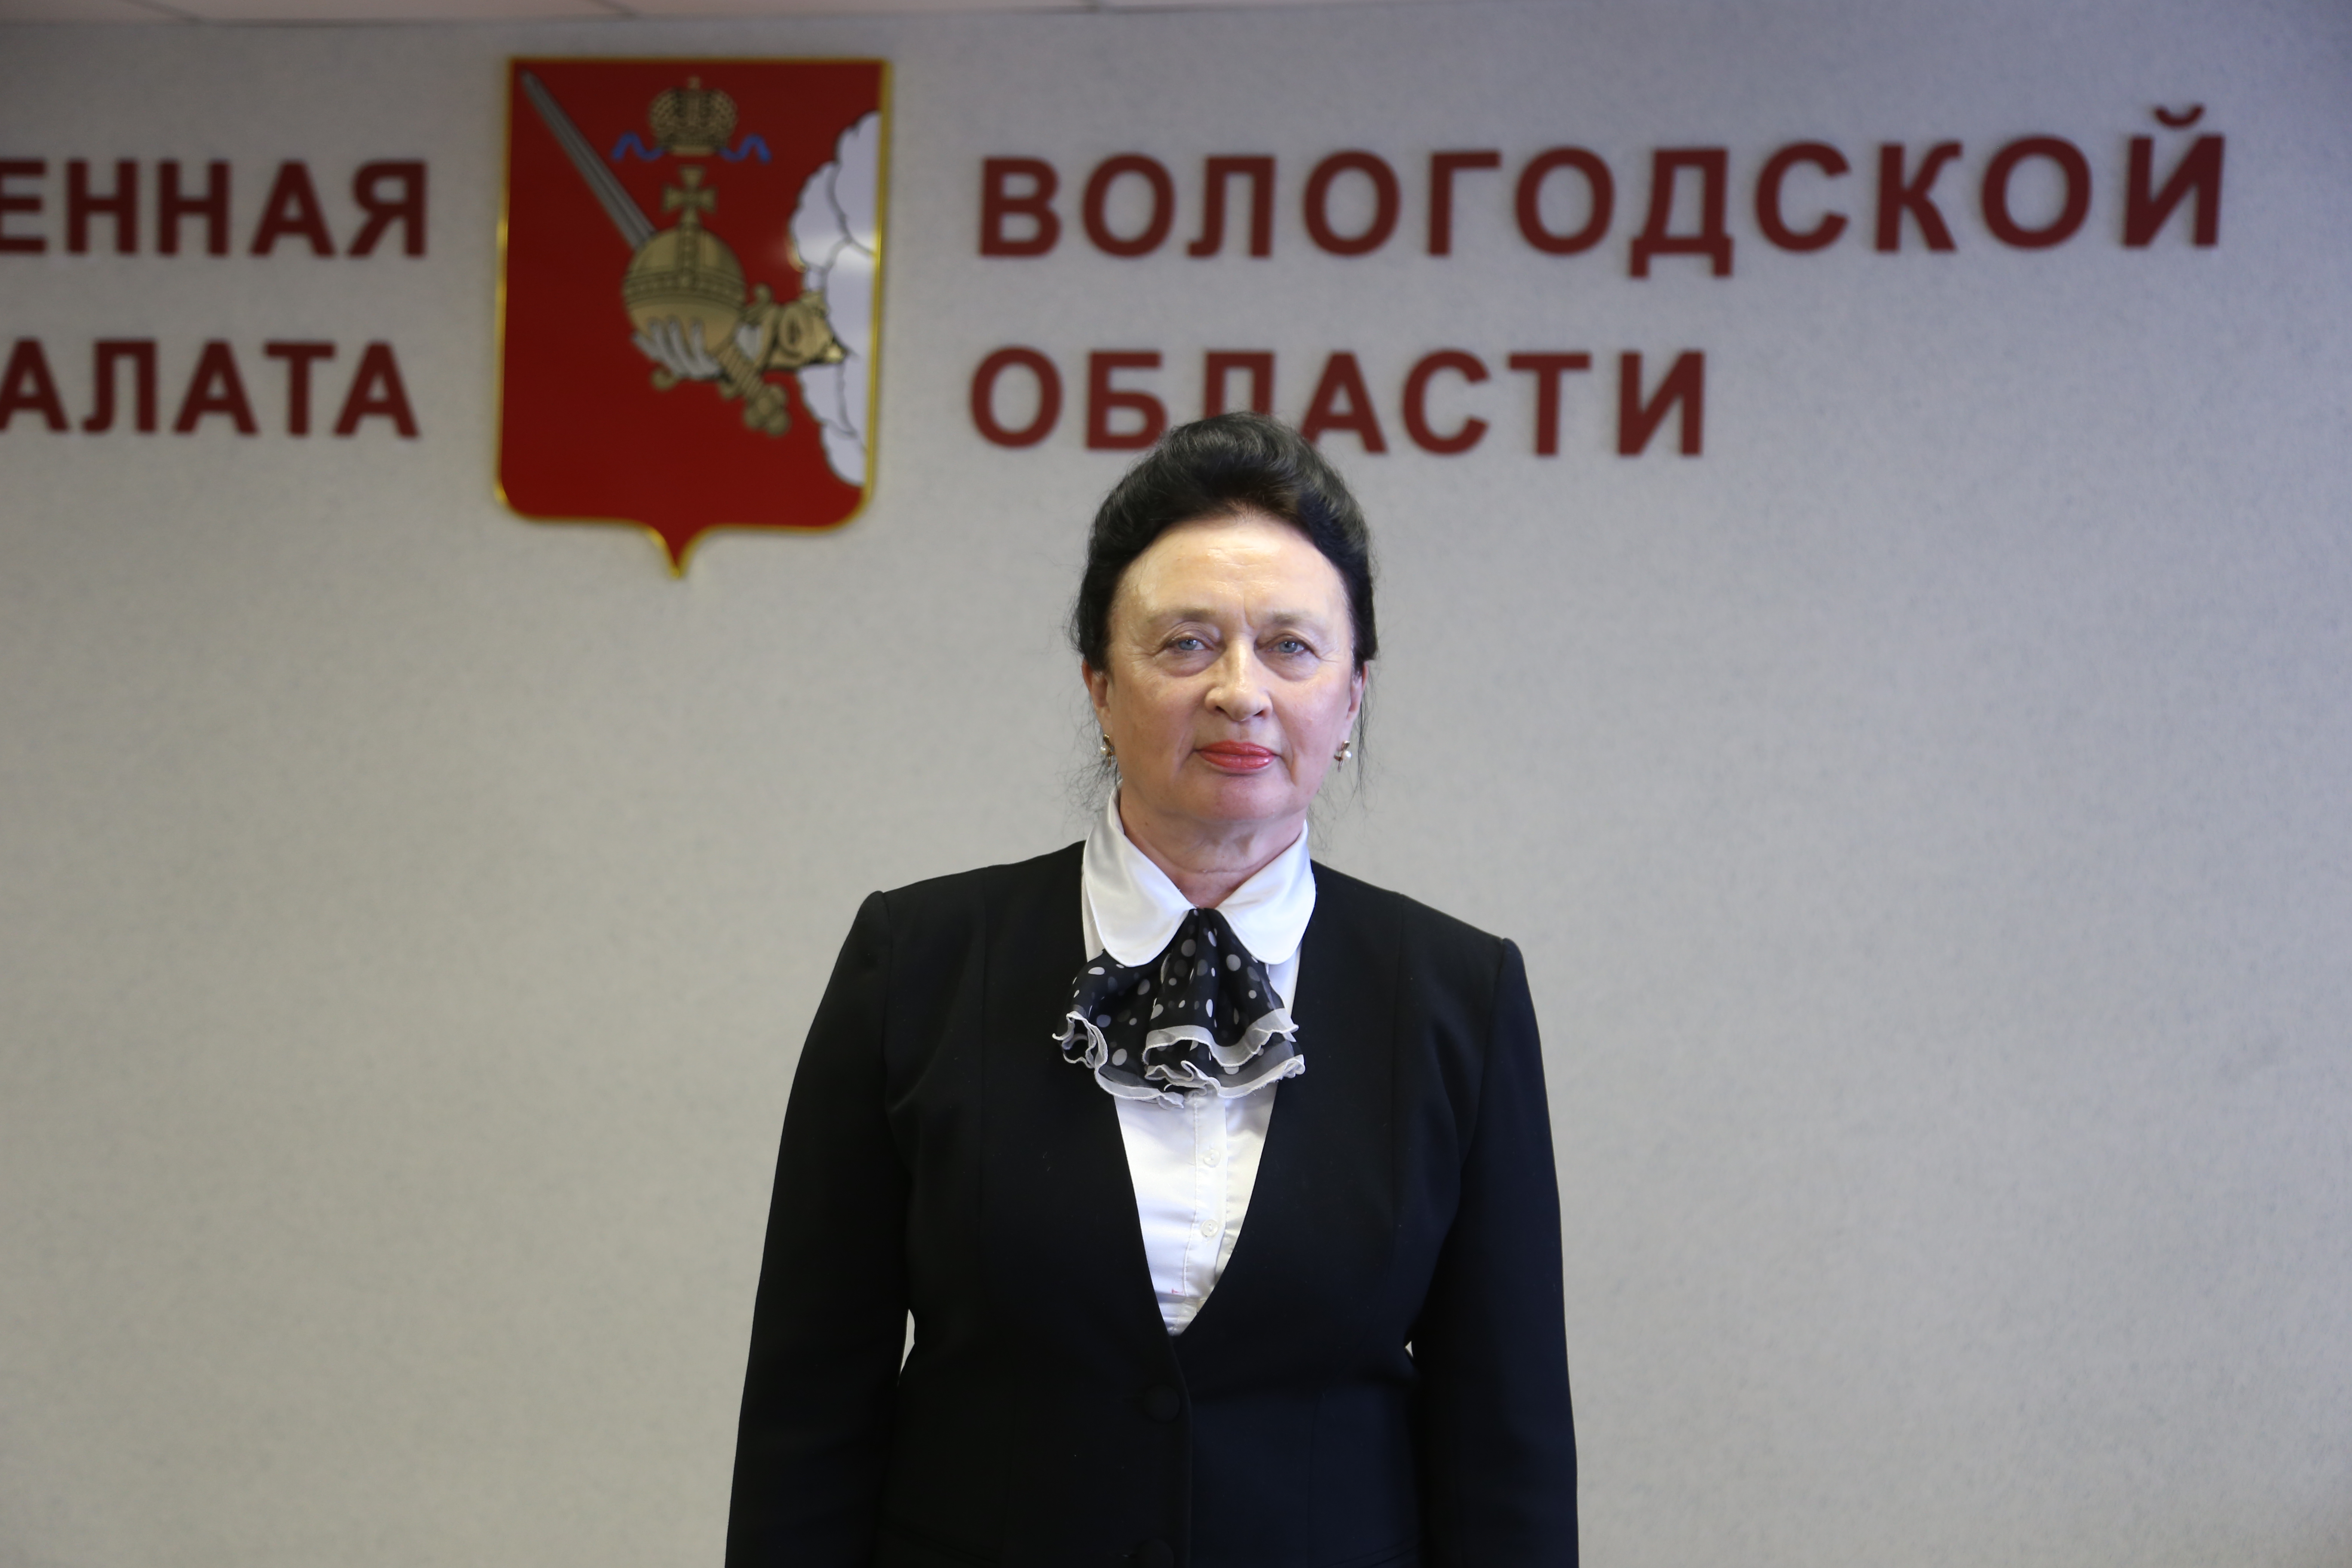 Сегодня свой день рождения отмечает член Общественной палаты Вологодской области Ольга Наумова